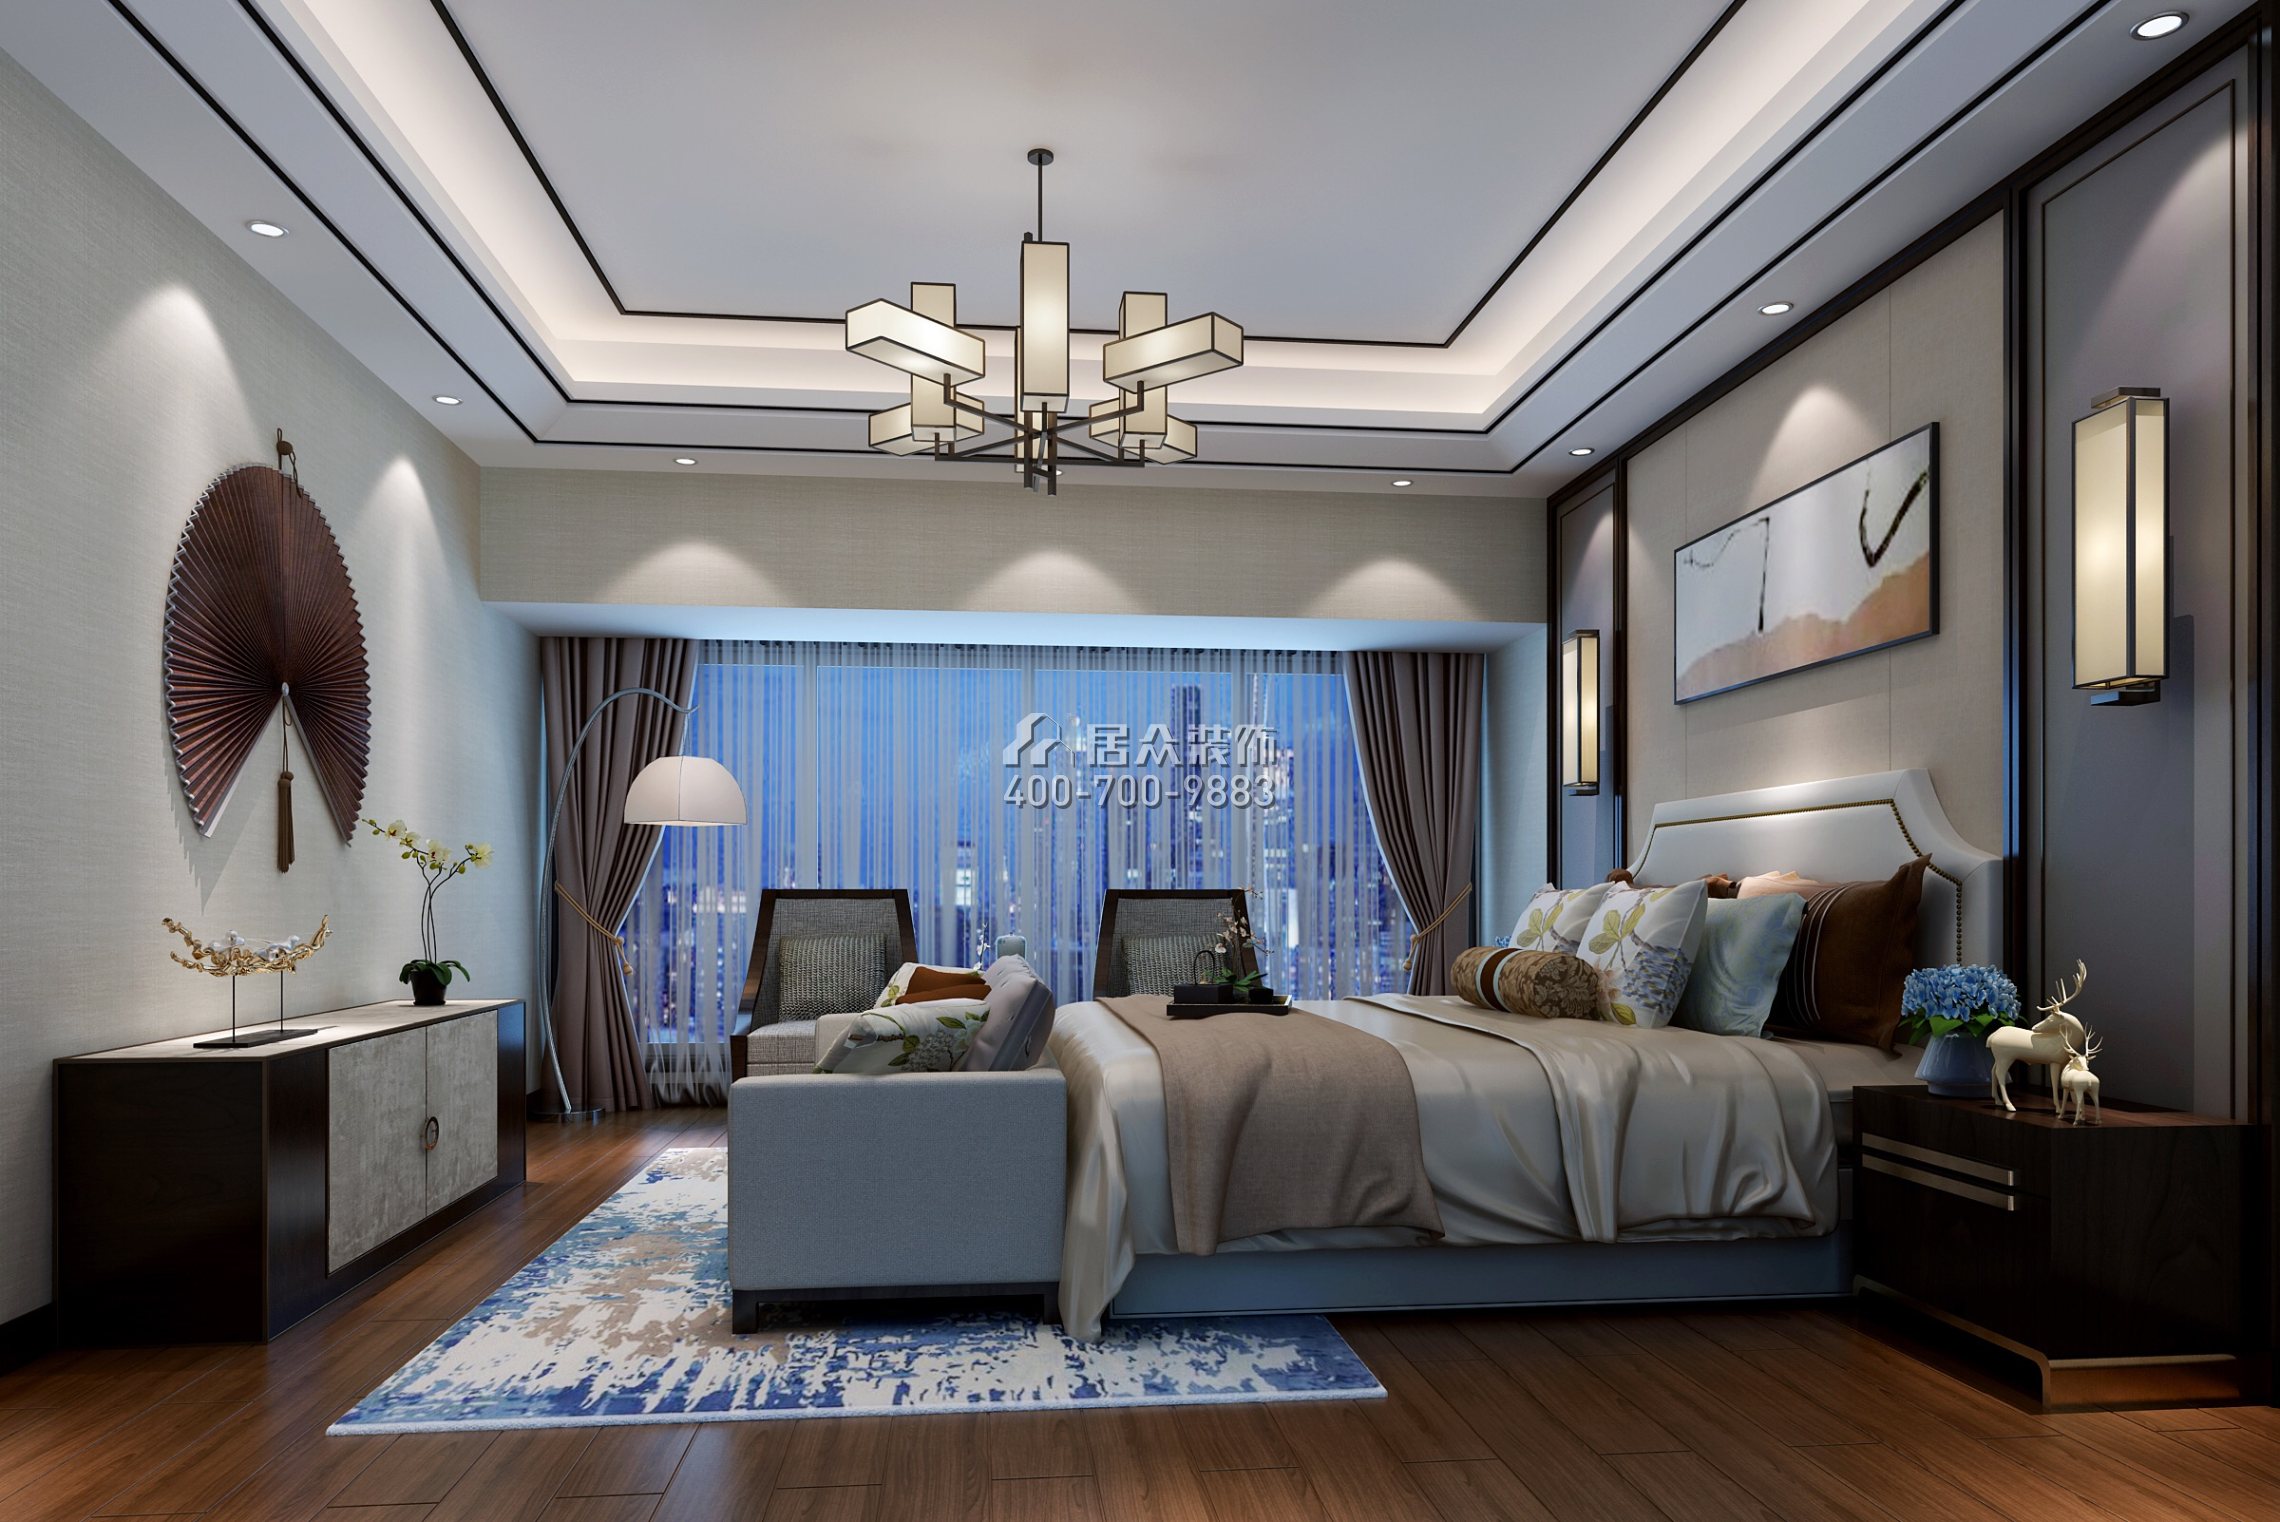 中洲中央公園二期150平方米新古典風格平層戶型臥室裝修效果圖